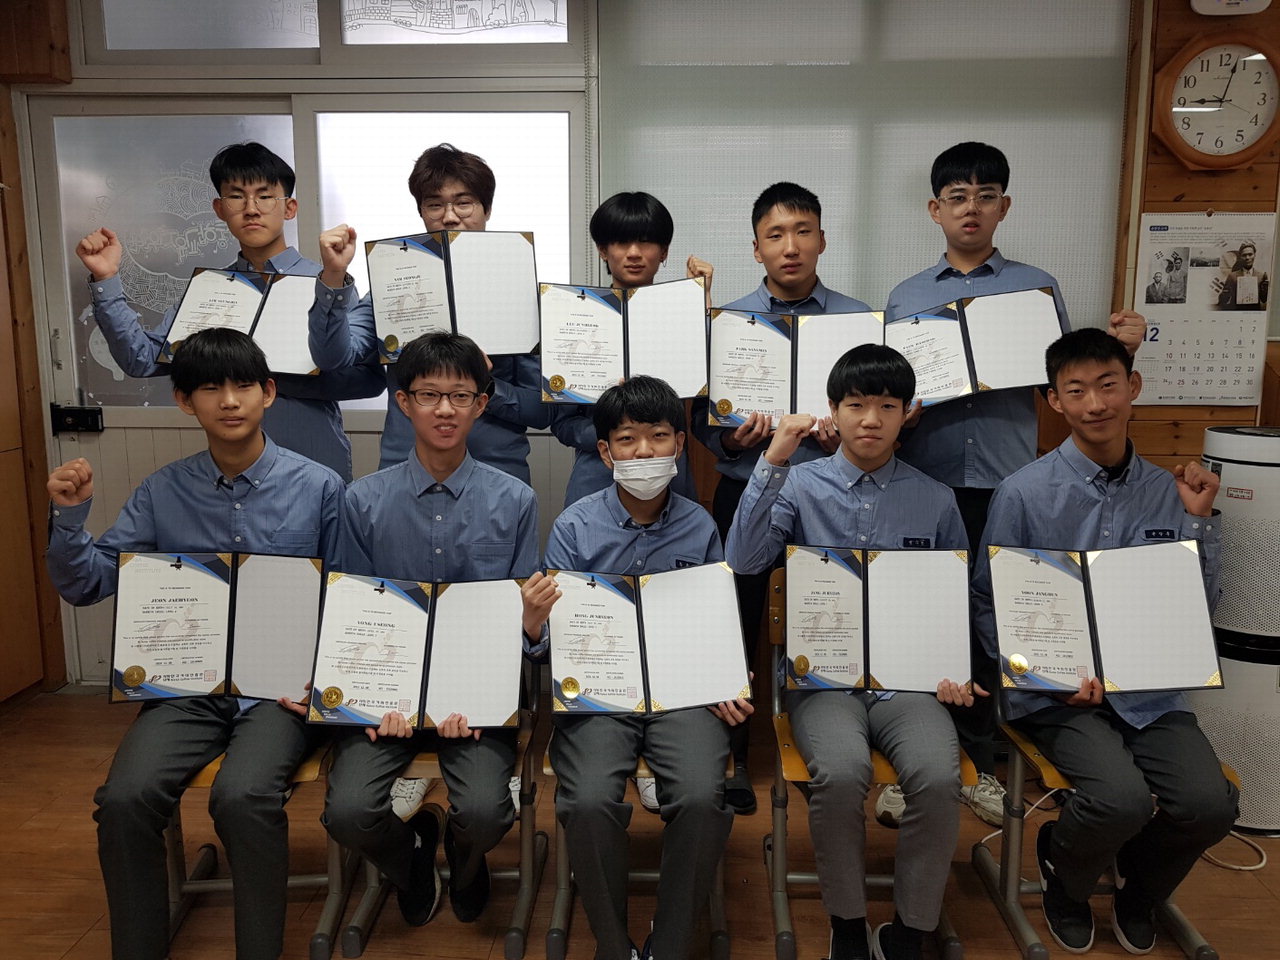 충북고등학교 통합교육지원반 학생 전원이 바리스타 자격증을 취득했다.